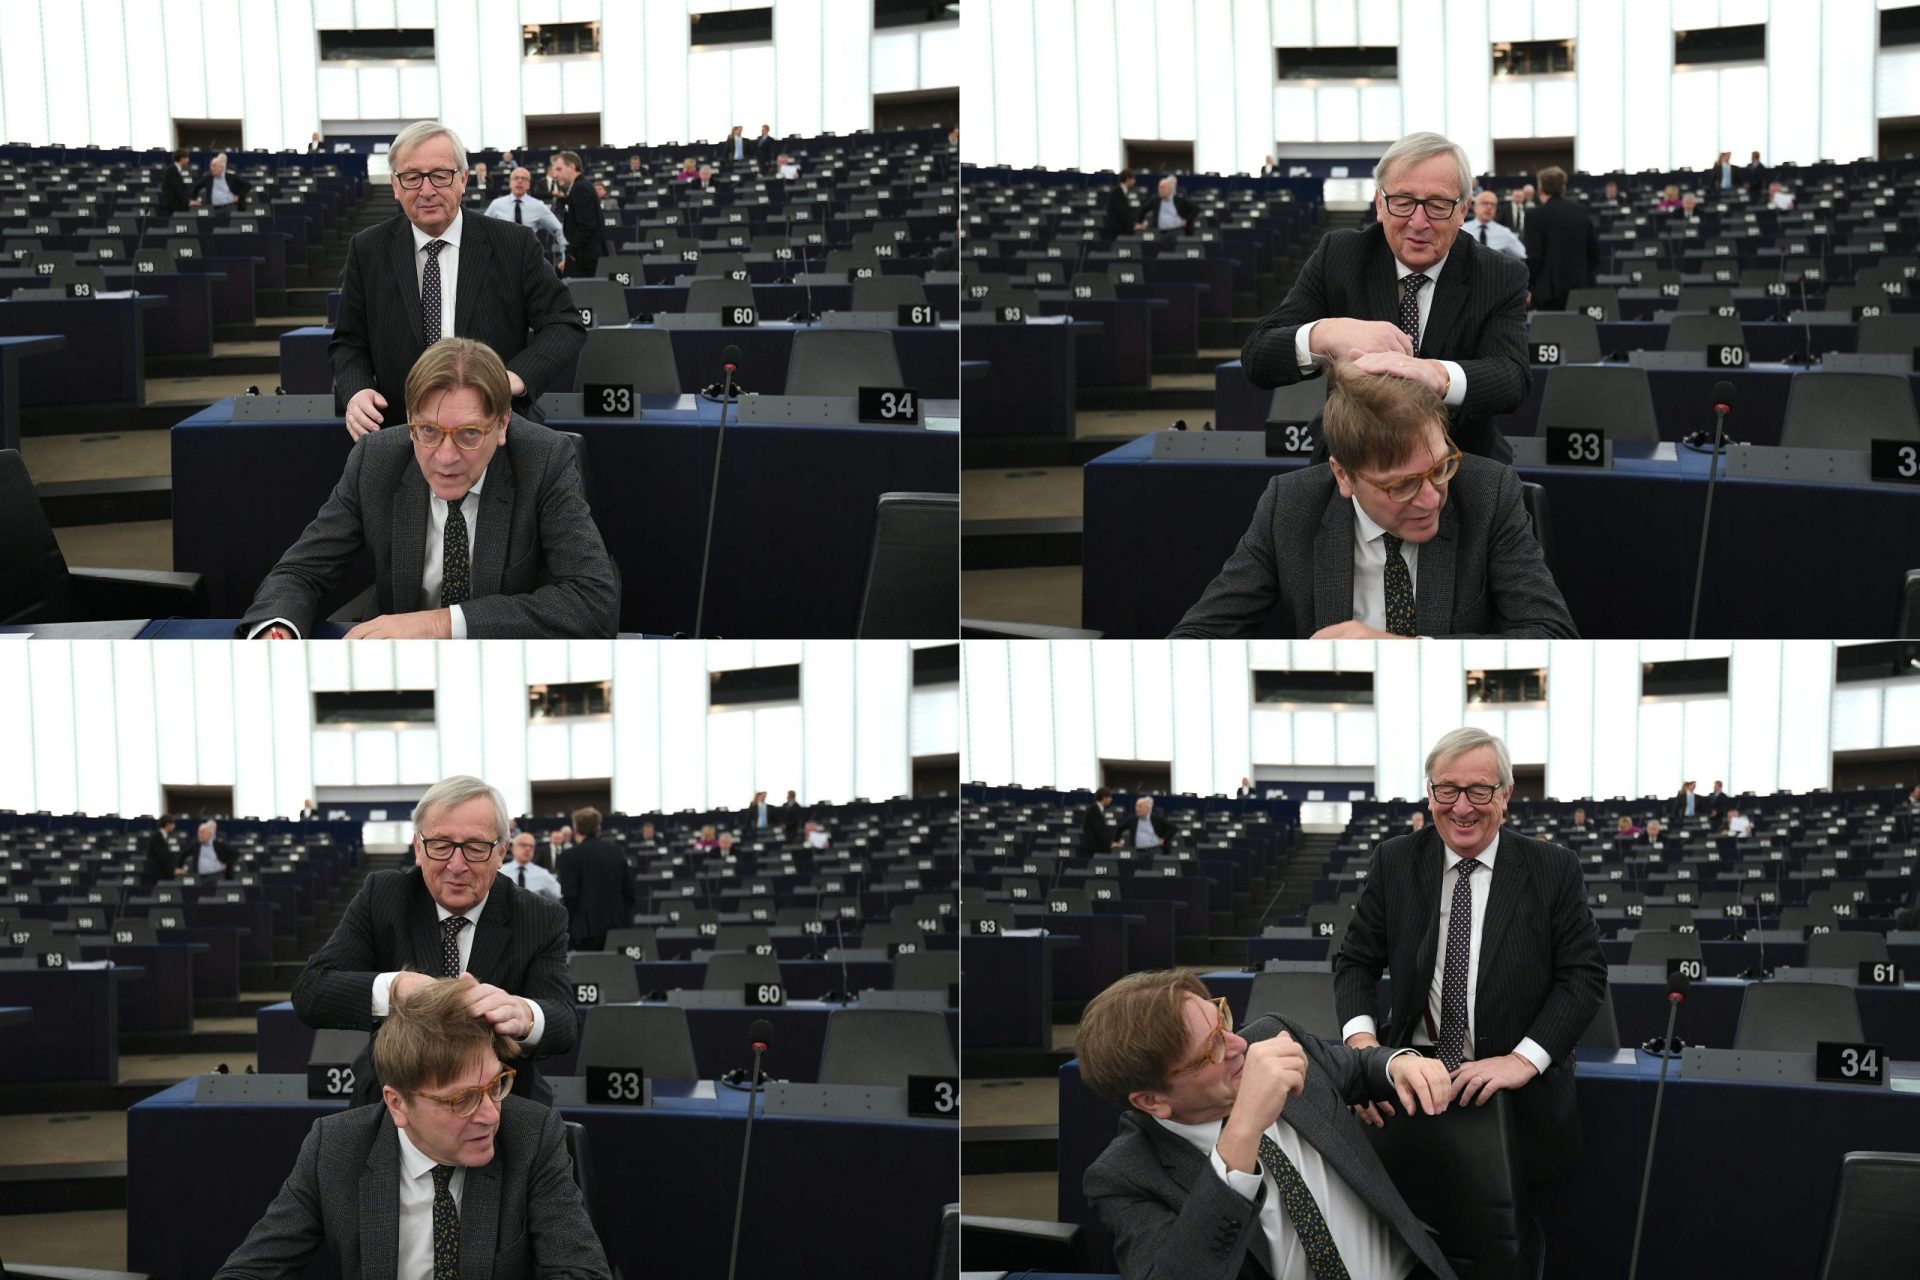 O momento em que Juncker despenteia Verhofstadt